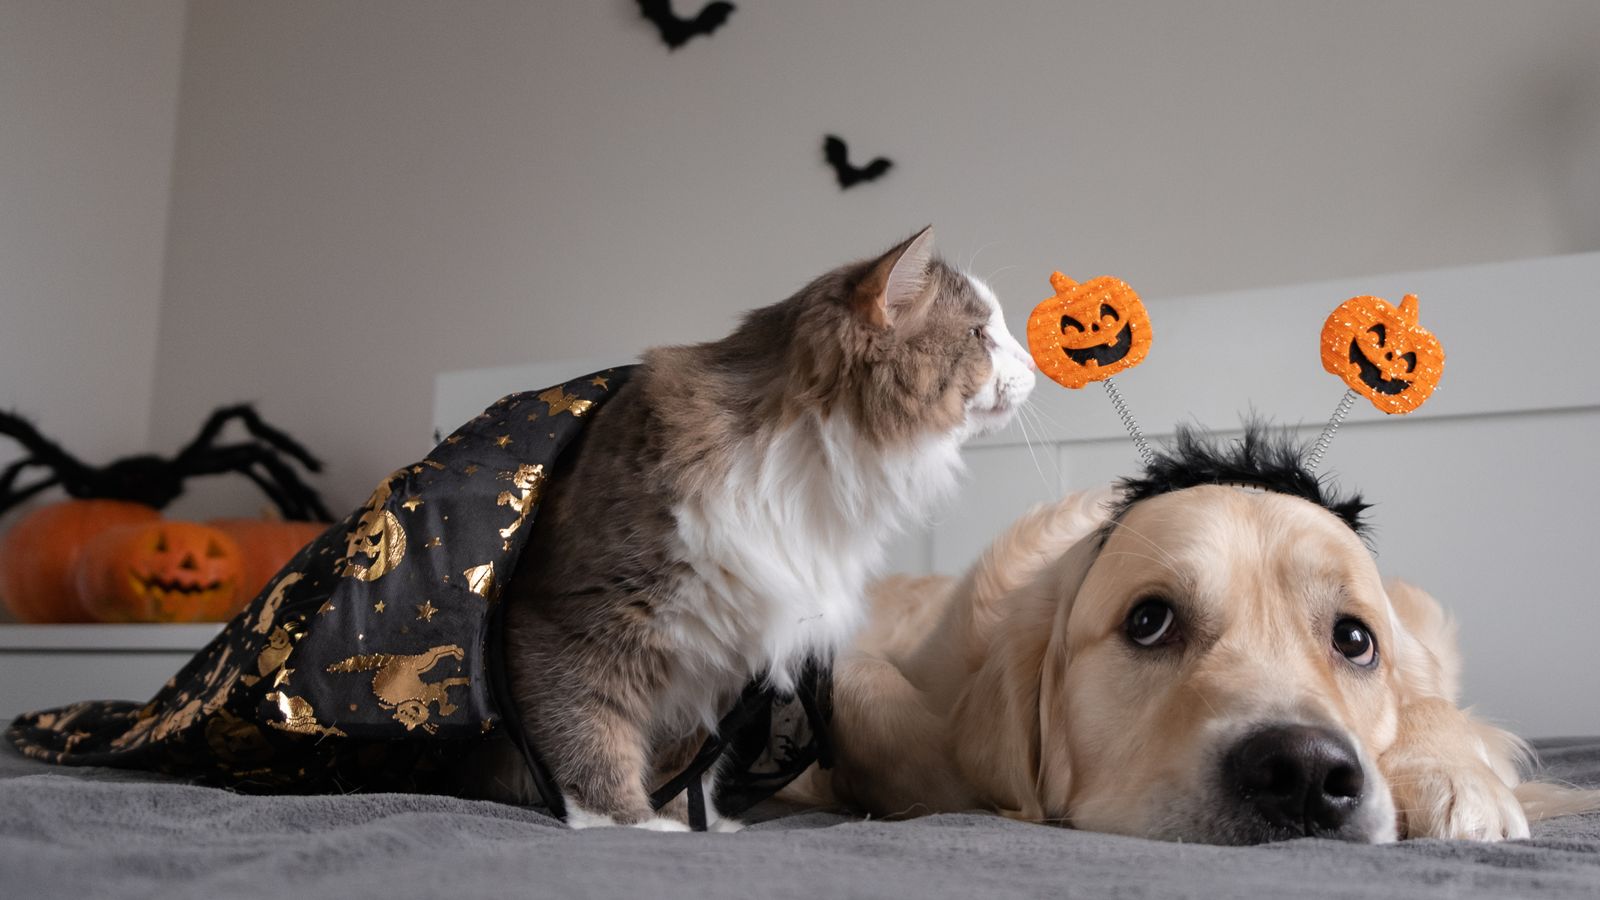 Les vétérinaires préviennent que les costumes « pourraient être nocifs » pour les animaux de compagnie avant Halloween |  Nouvelles du Royaume-Uni